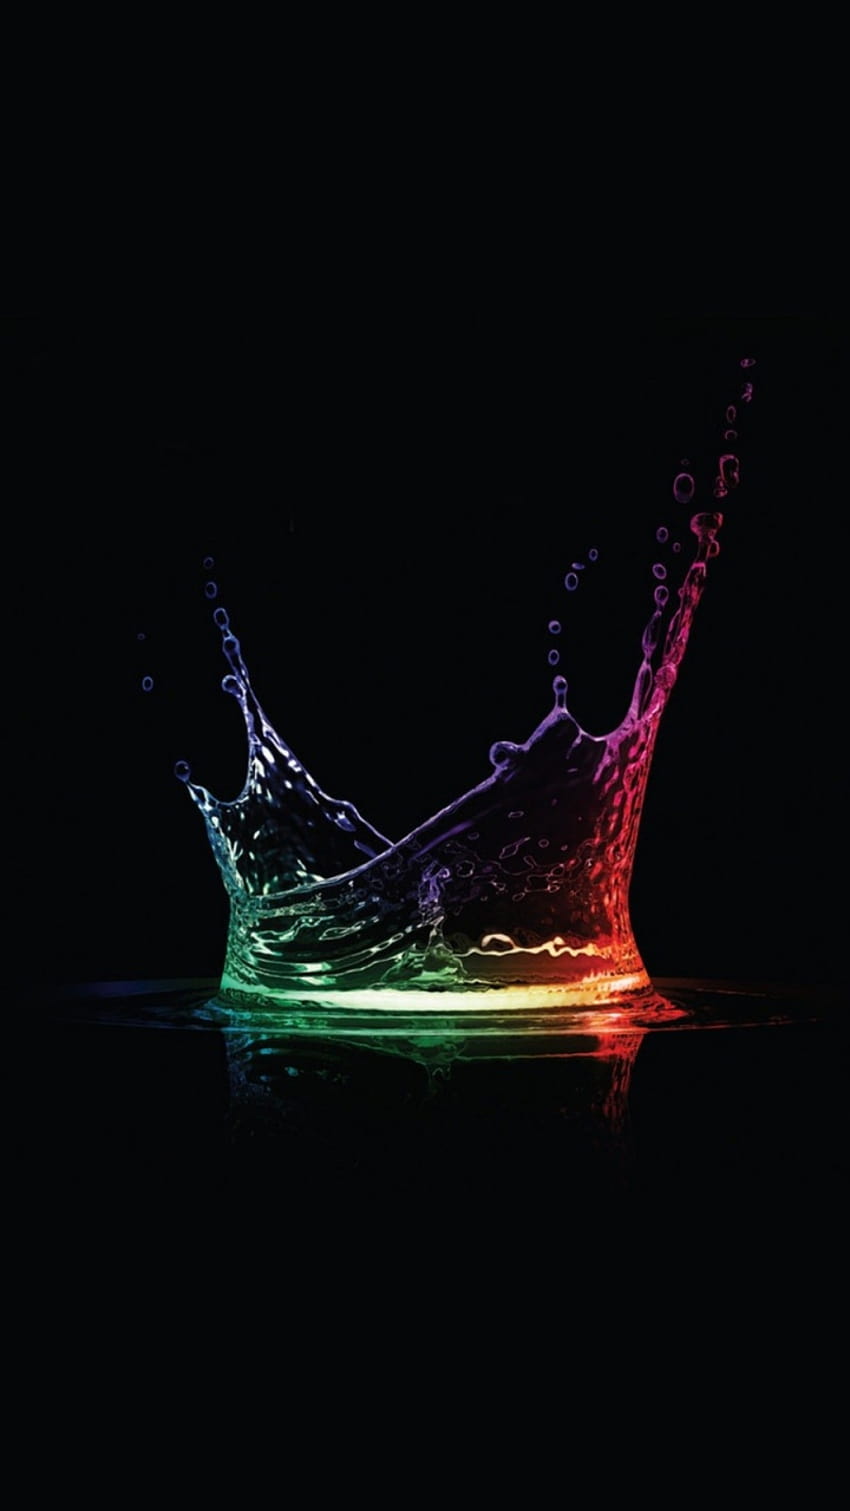 Iphone Colorful Water Drop, raindrop splash HD phone wallpaper